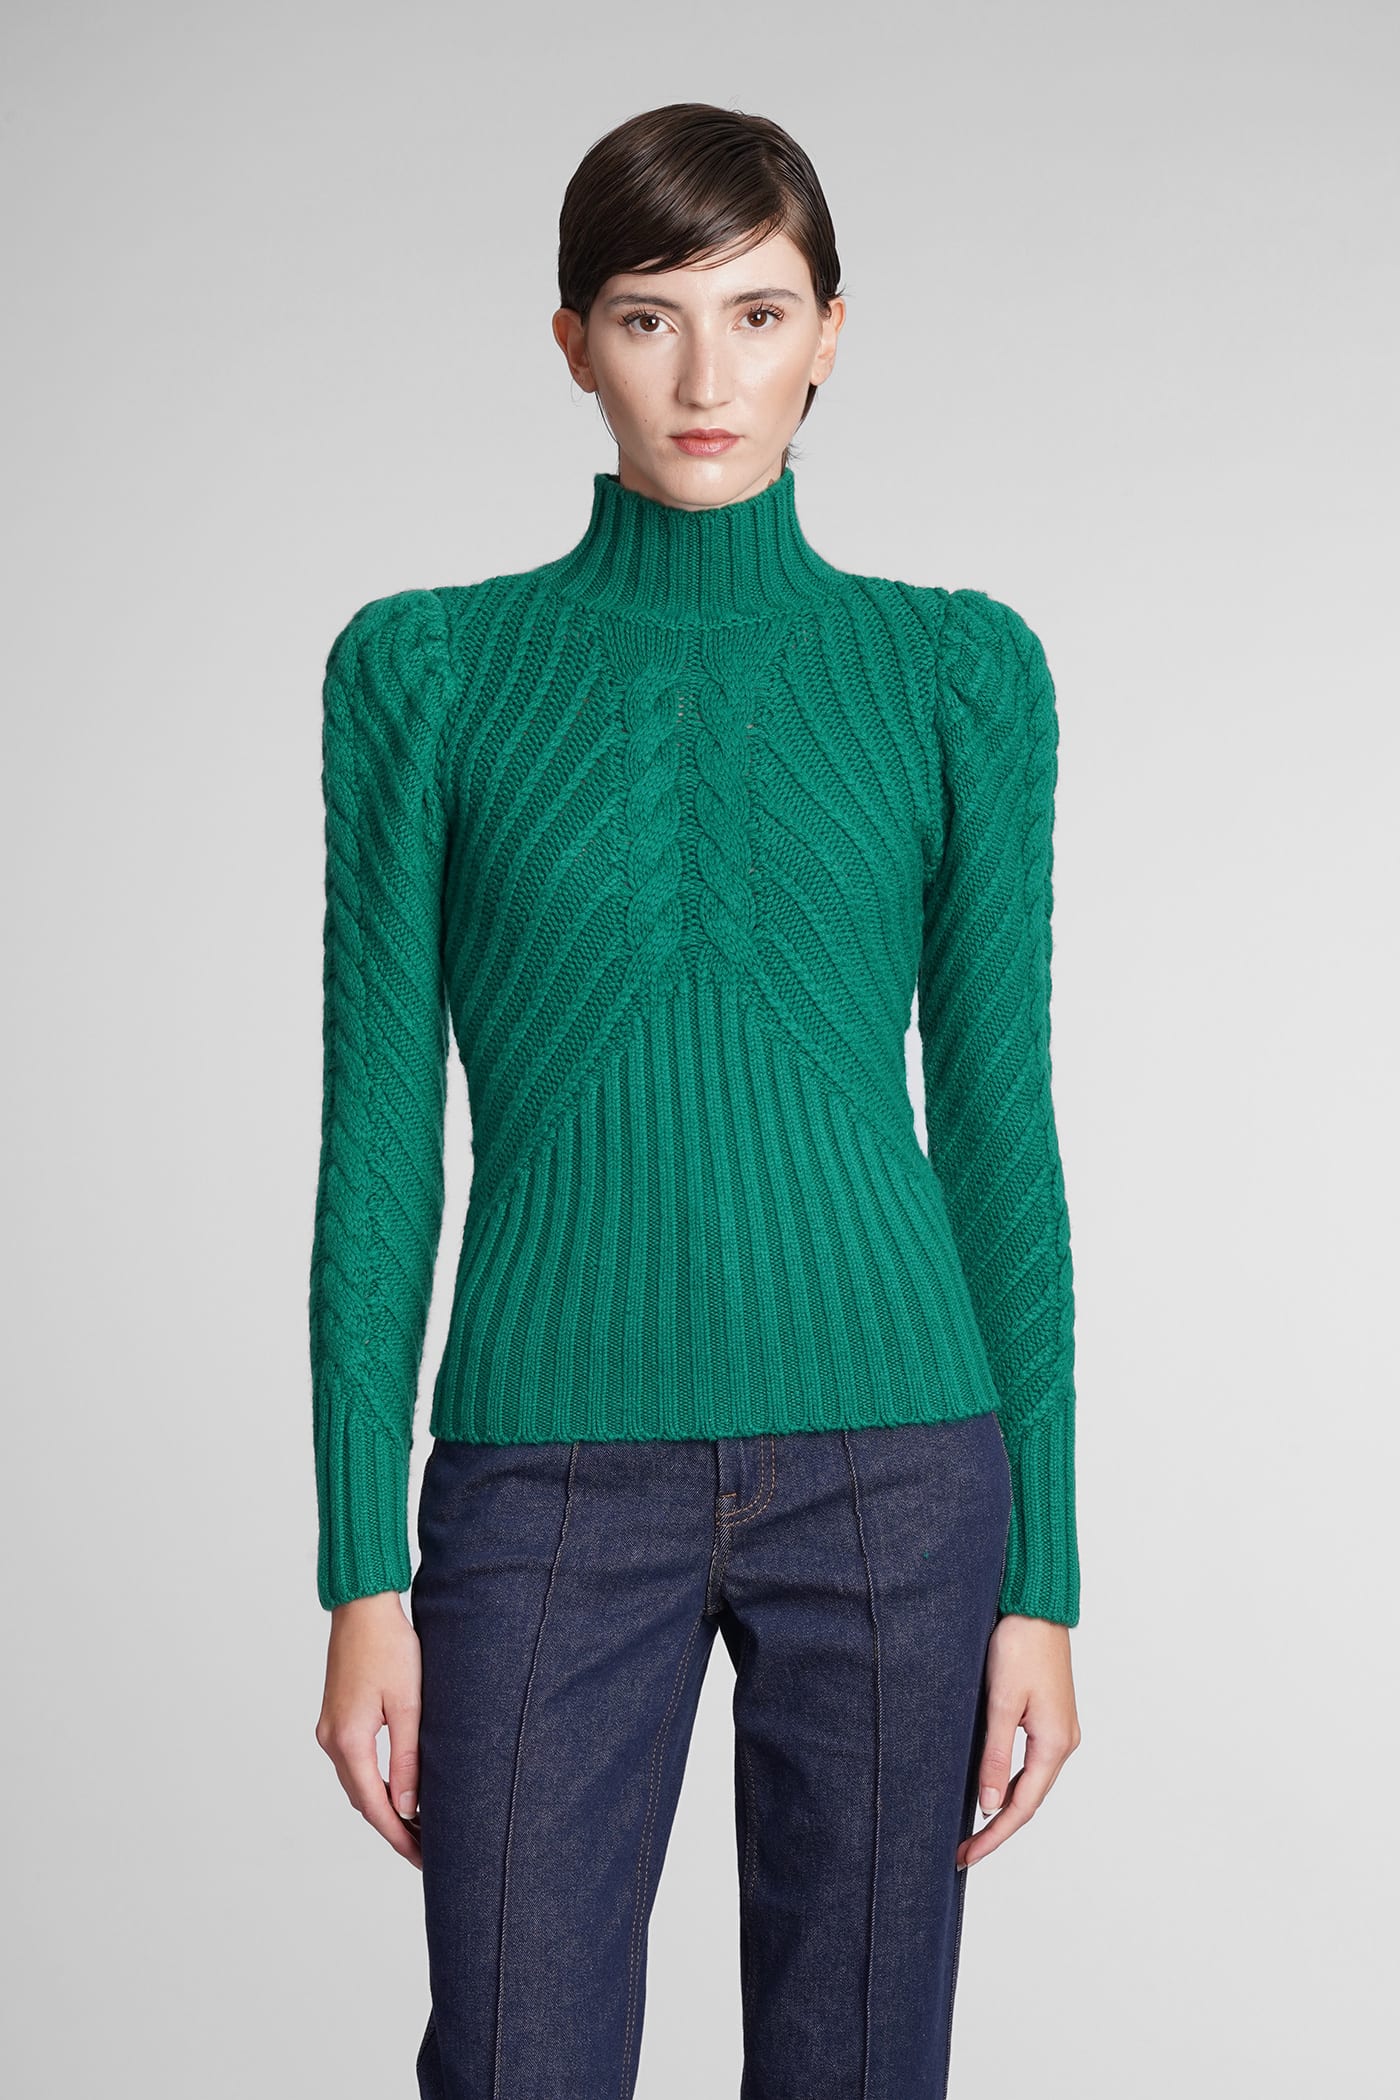 Zimmermann Knitwear In Green Wool